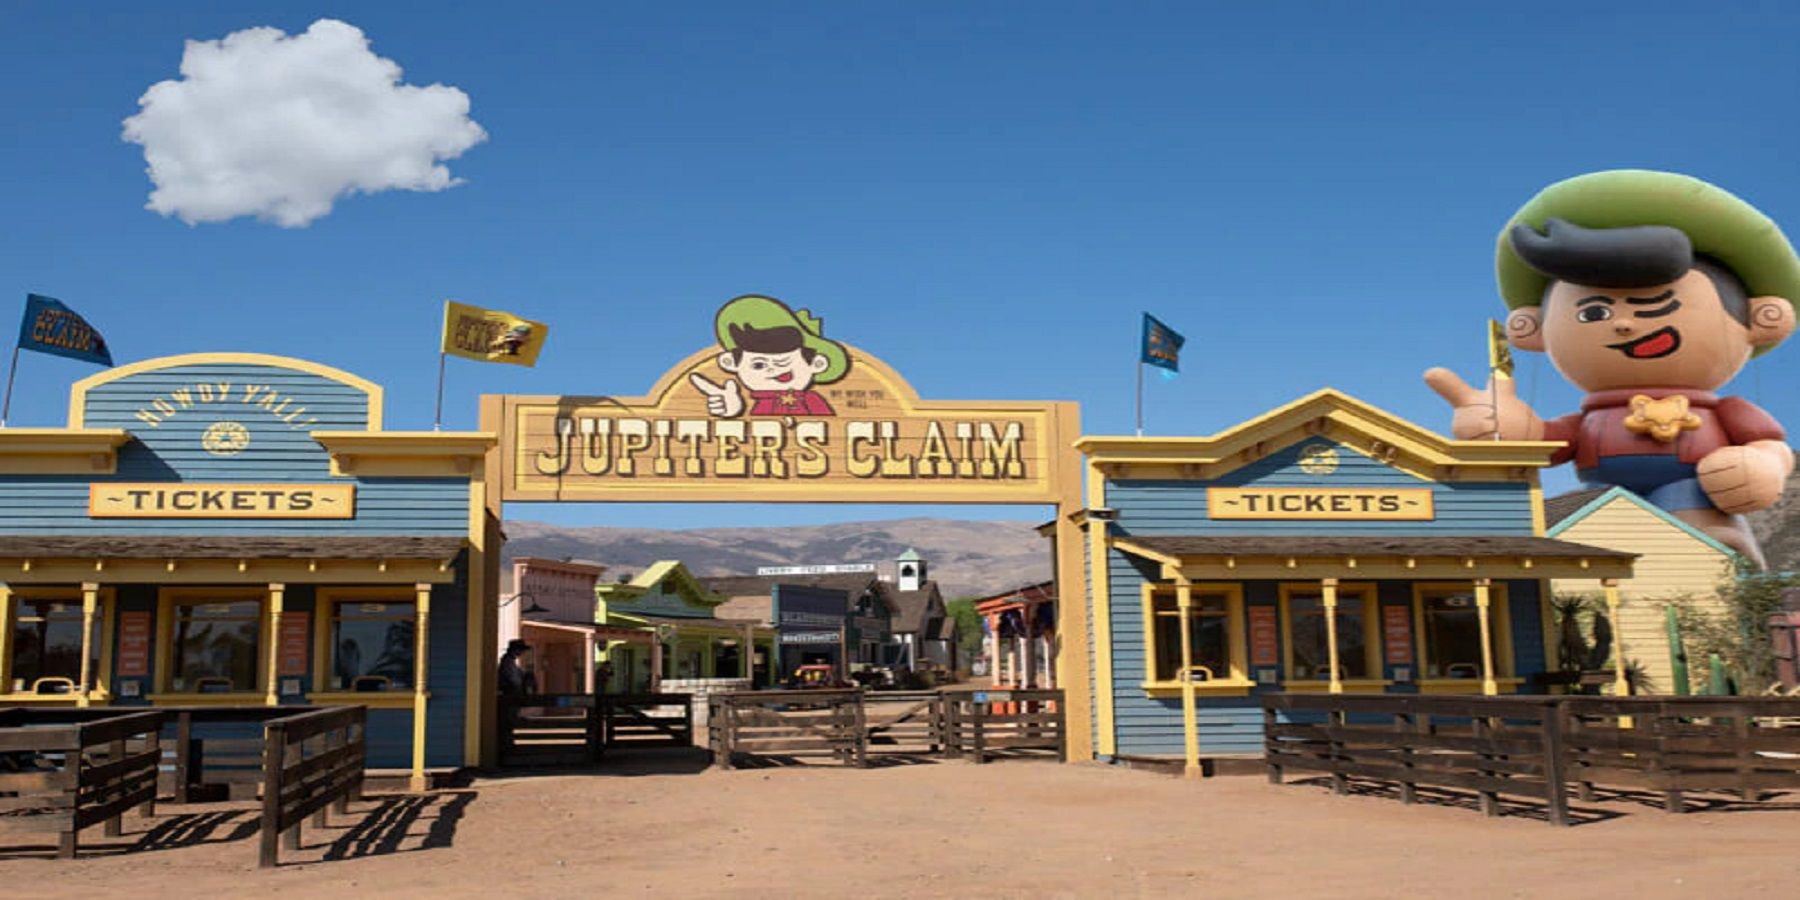 Jordan Peele Nope jupiter's claim theme park